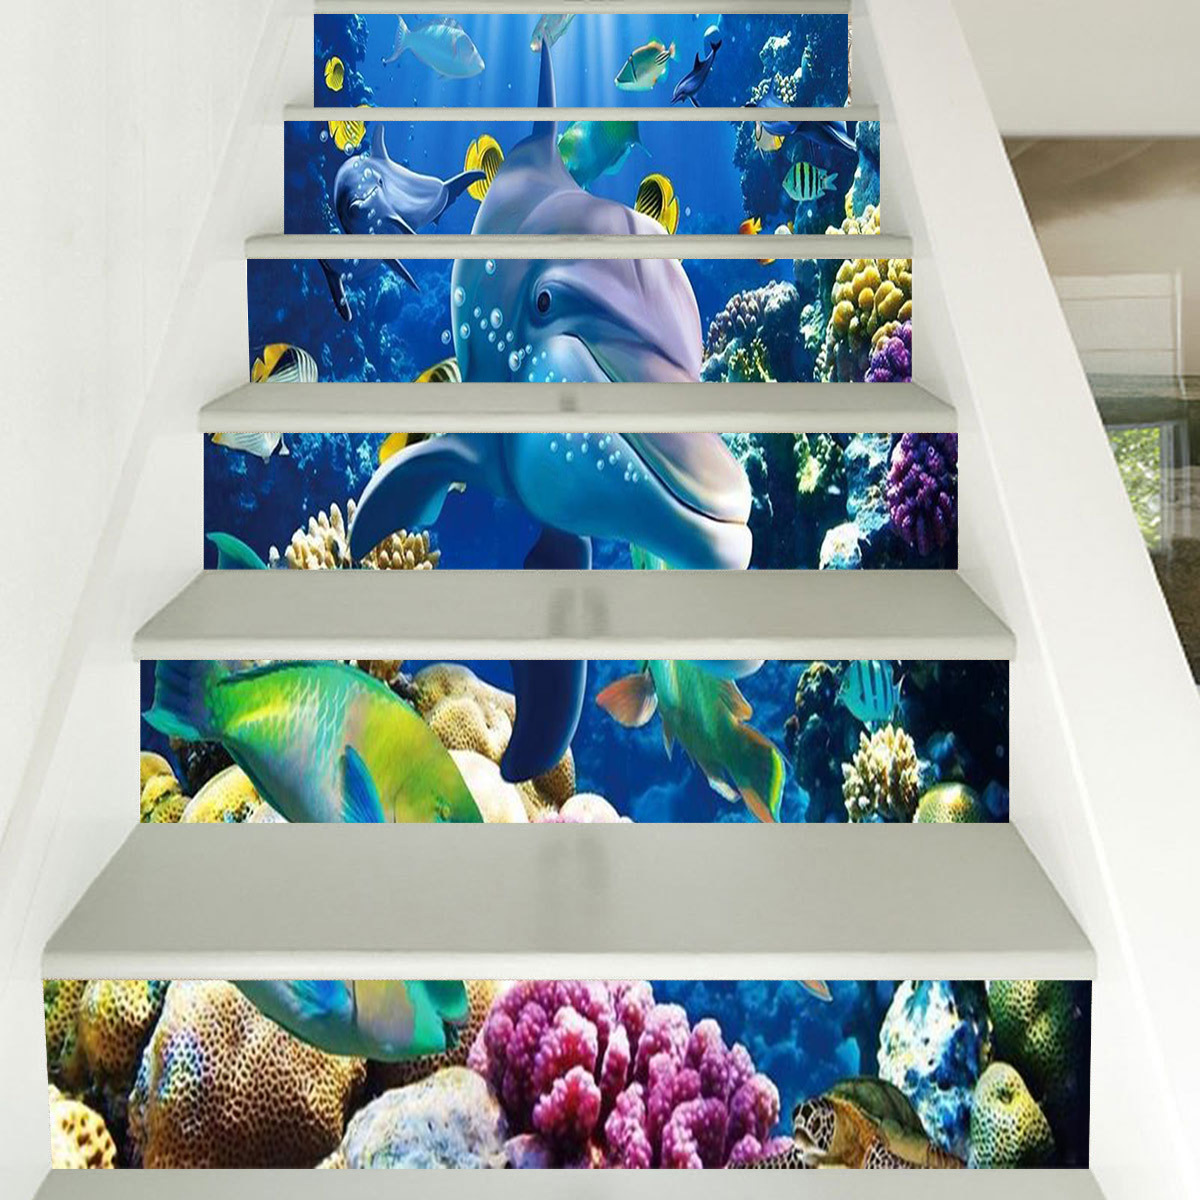 Oceaan Serie Trappen Muurschildering Stickers Diy Zelfklevende Sticker Behang Voor Oceaan Thema Hotel En Restaurant Home Decoratie